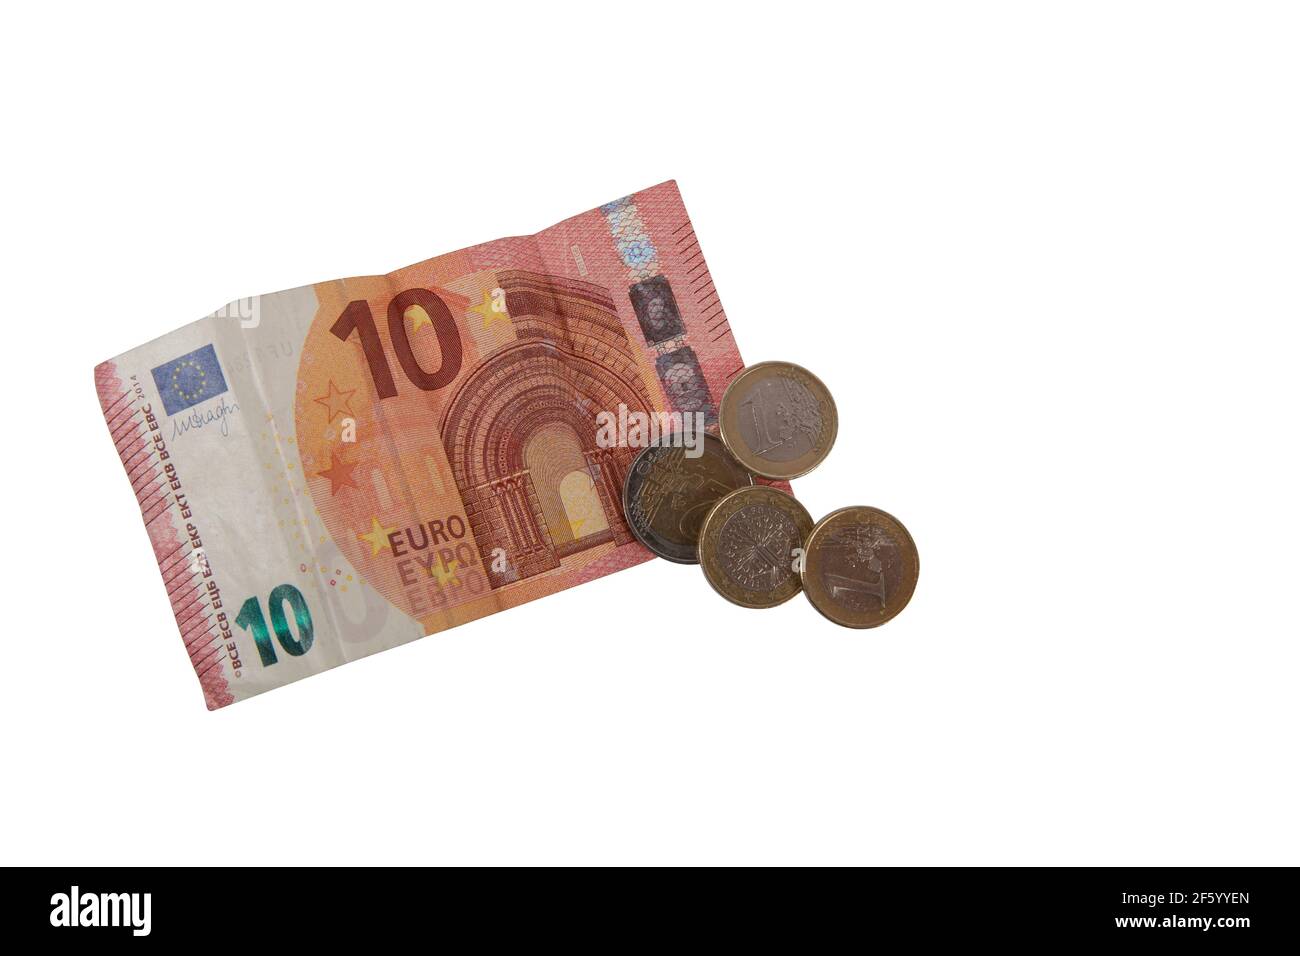 Ein 10 Euro Schein und 5 Euro in Münzen freigestellt Stock Photo